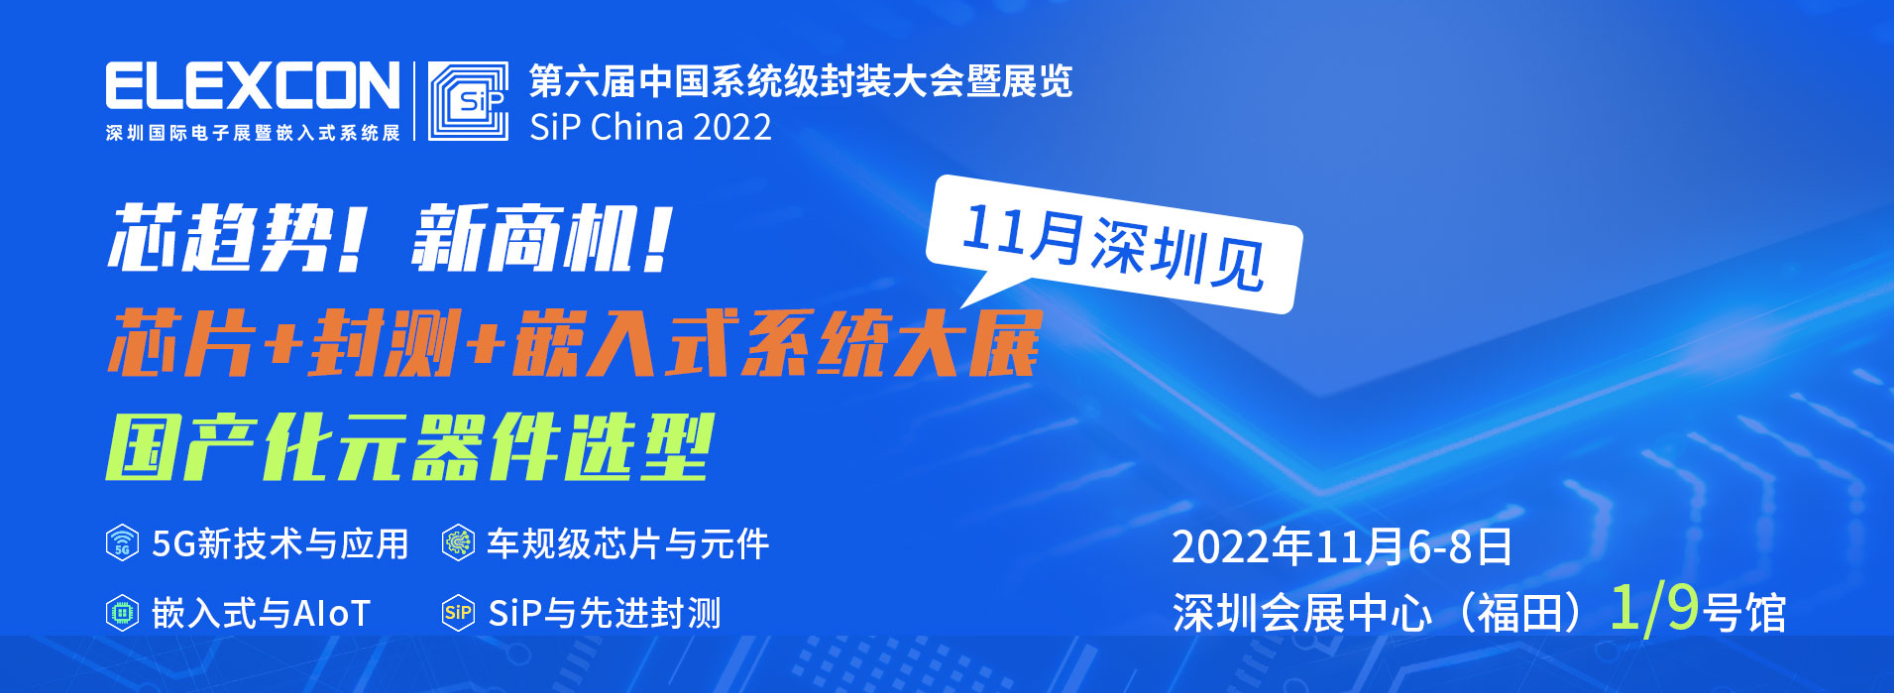 2022 深圳国际电子展暨嵌入式系统展(ELEXCON),固耐普欢迎您届时拨冗莅临